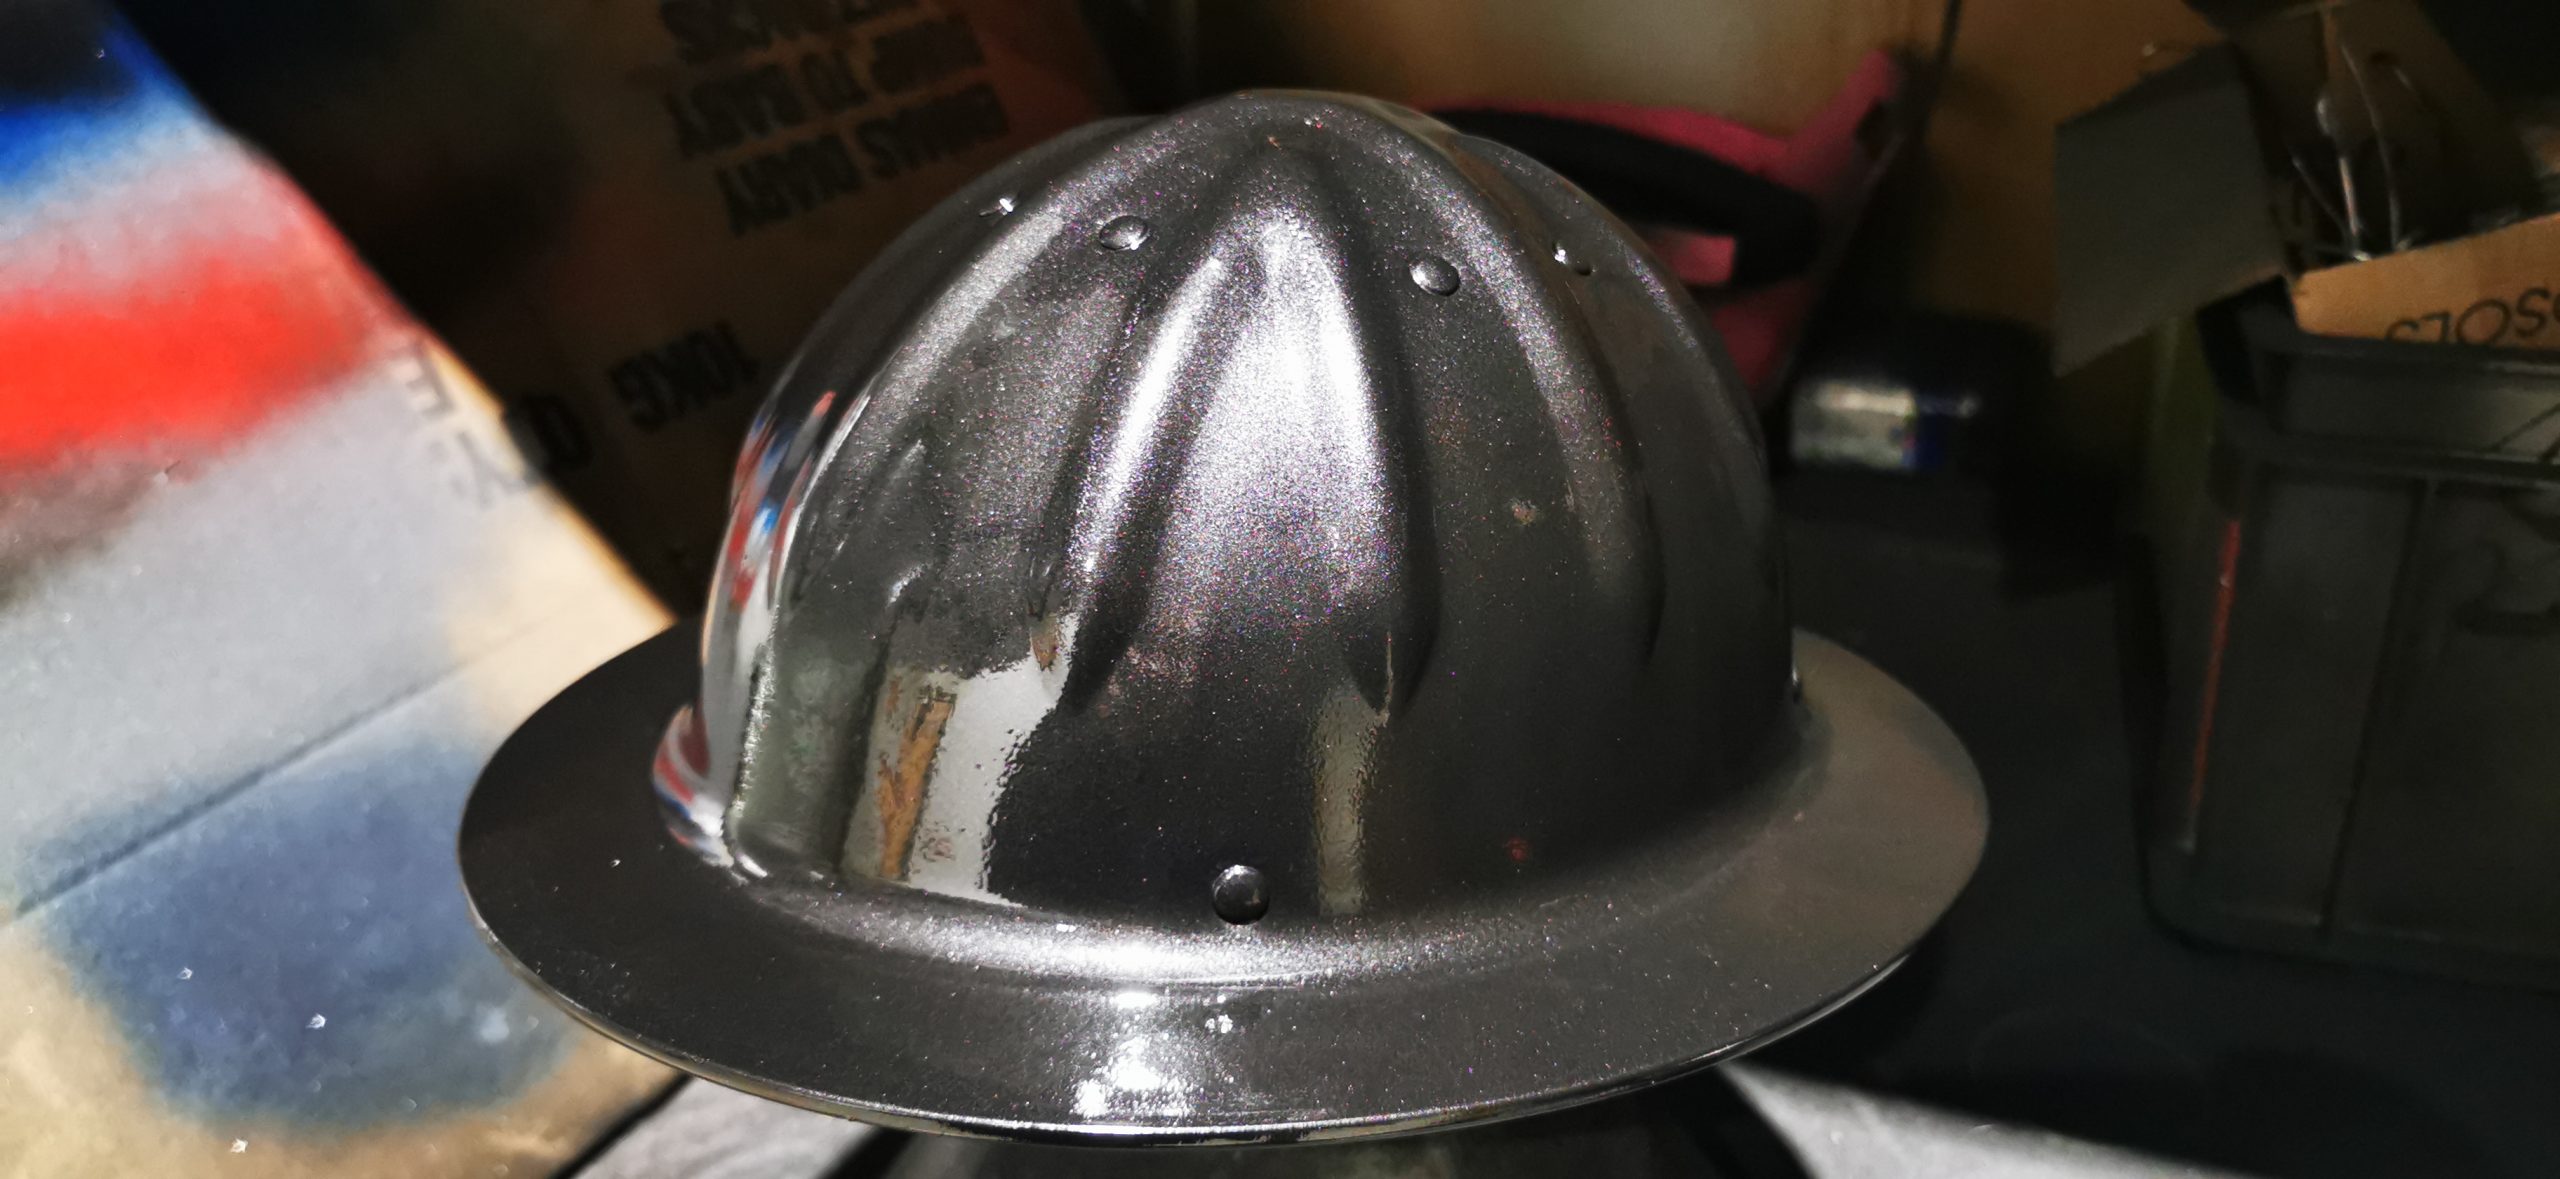 black coating on minors helmet